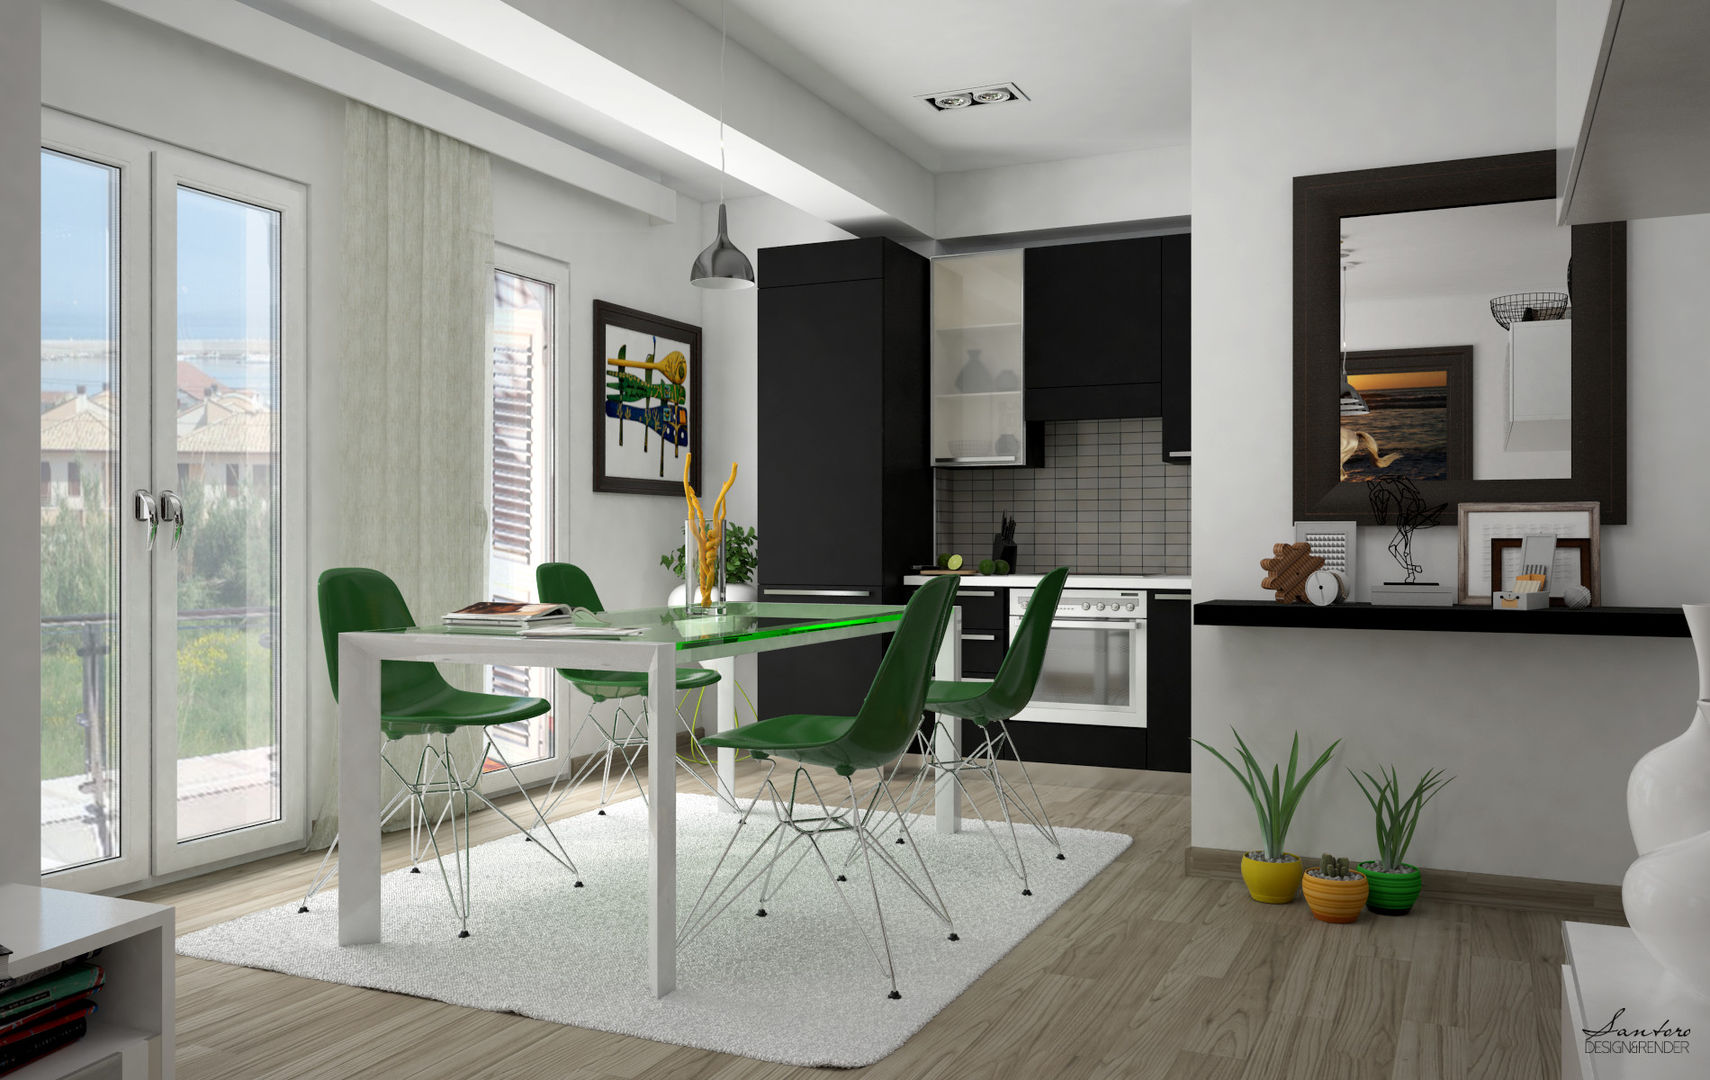 Design & Render livingroom – arredamento S.Agata Militello (ME) , Santoro Design Render Santoro Design Render مطبخ